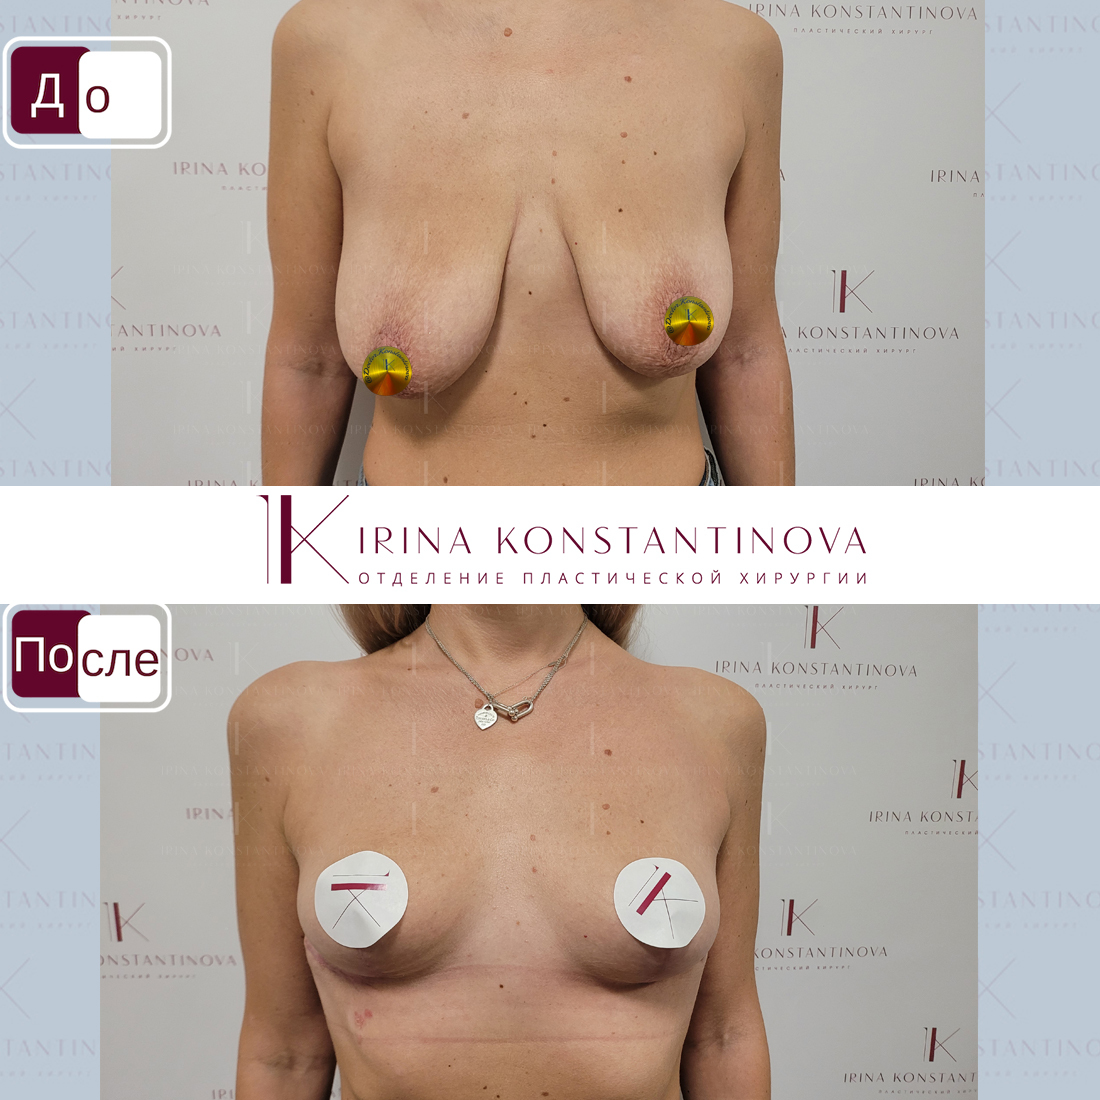 подтяжка груди с гантелями для женщин фото 1